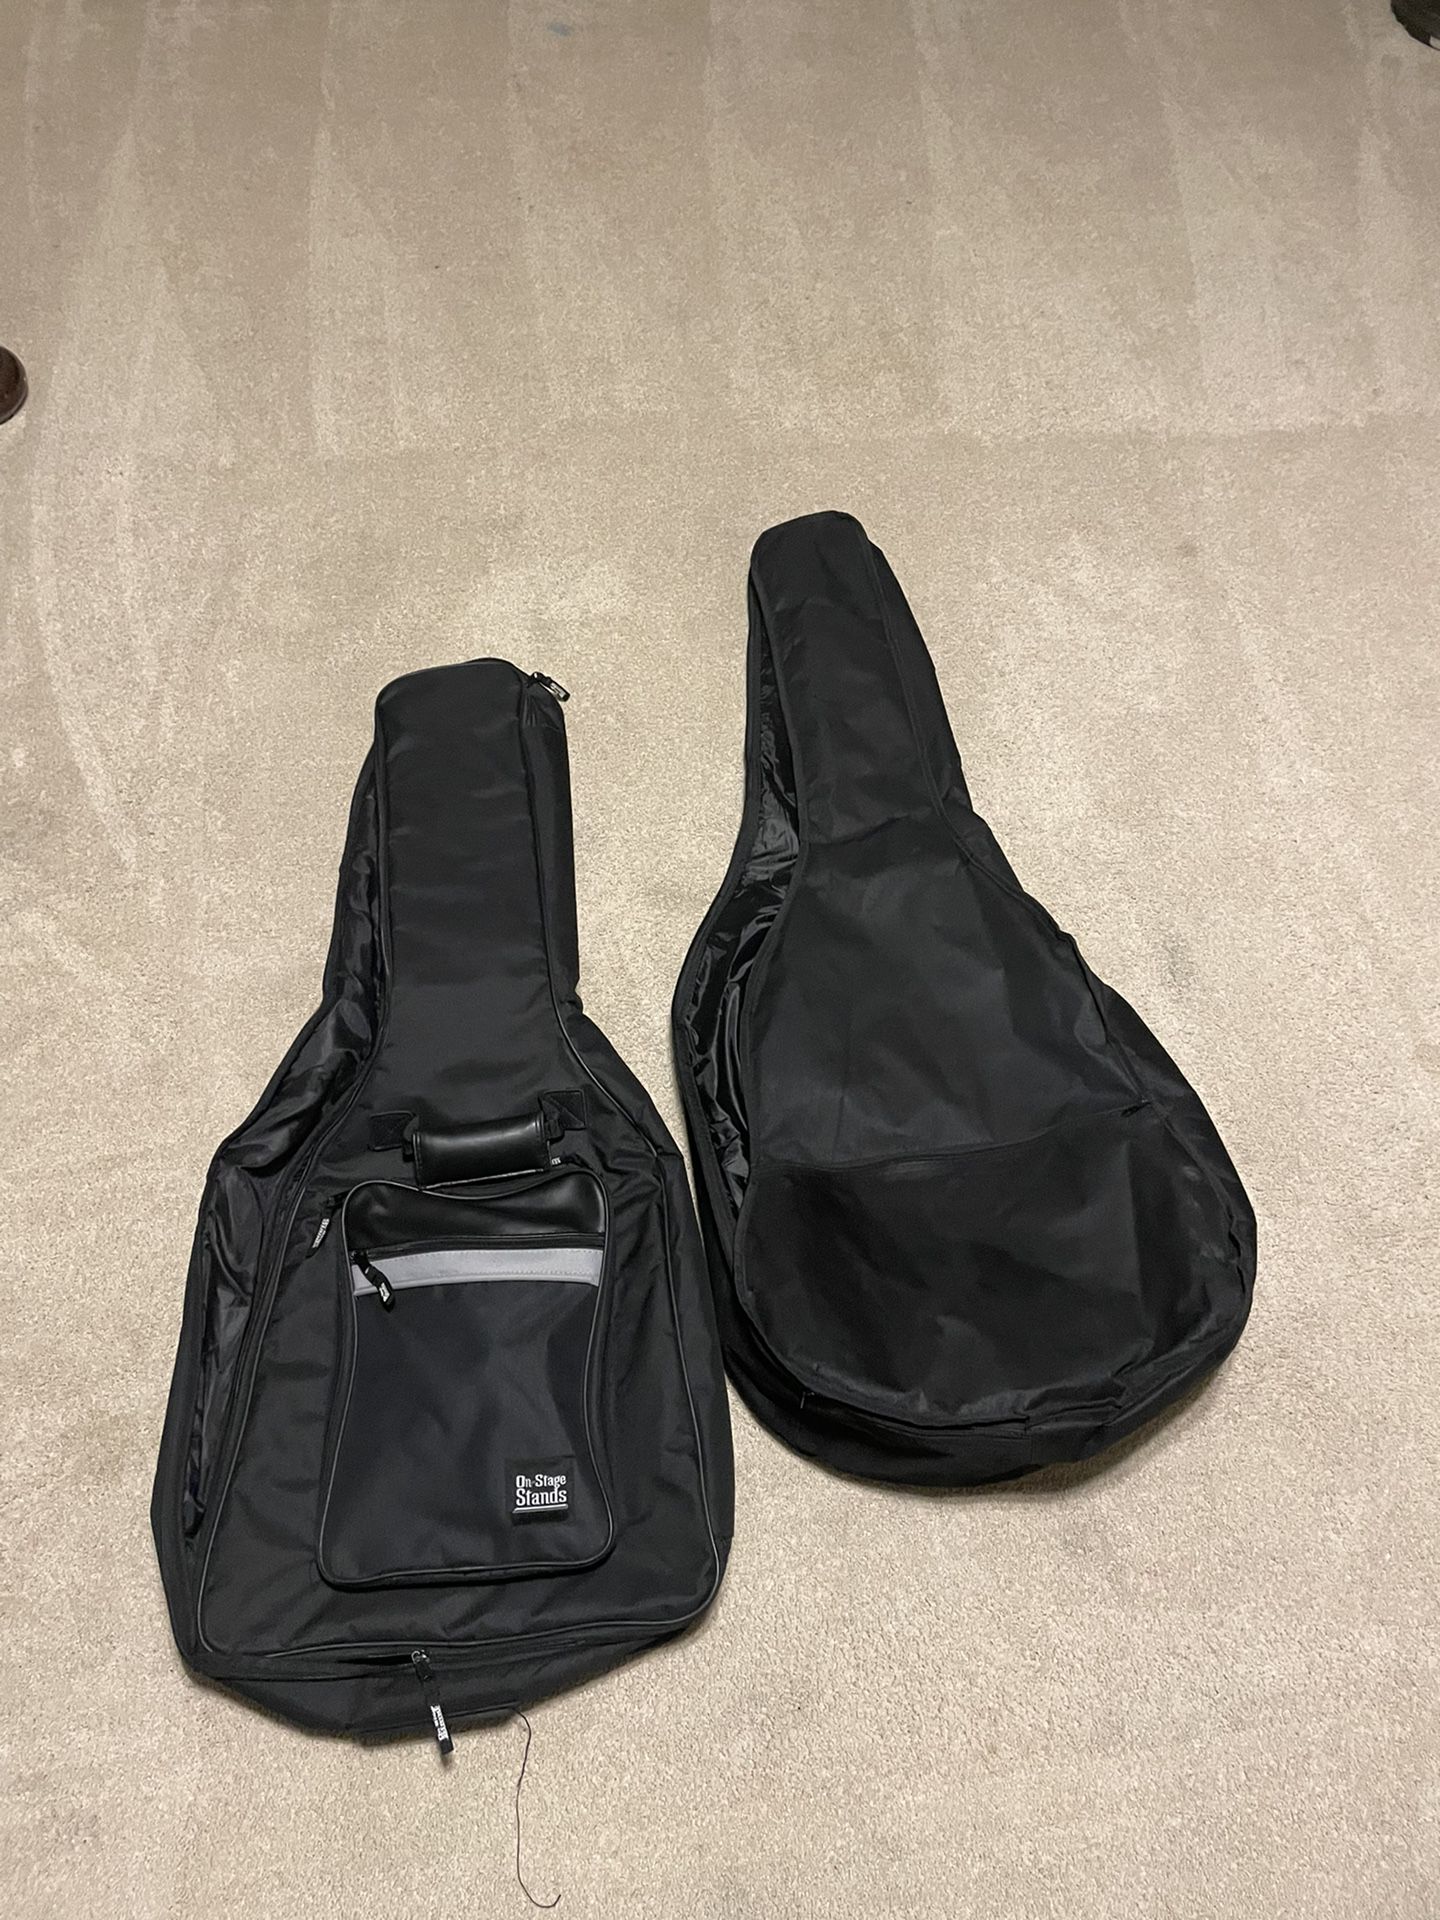 Guitar Bags